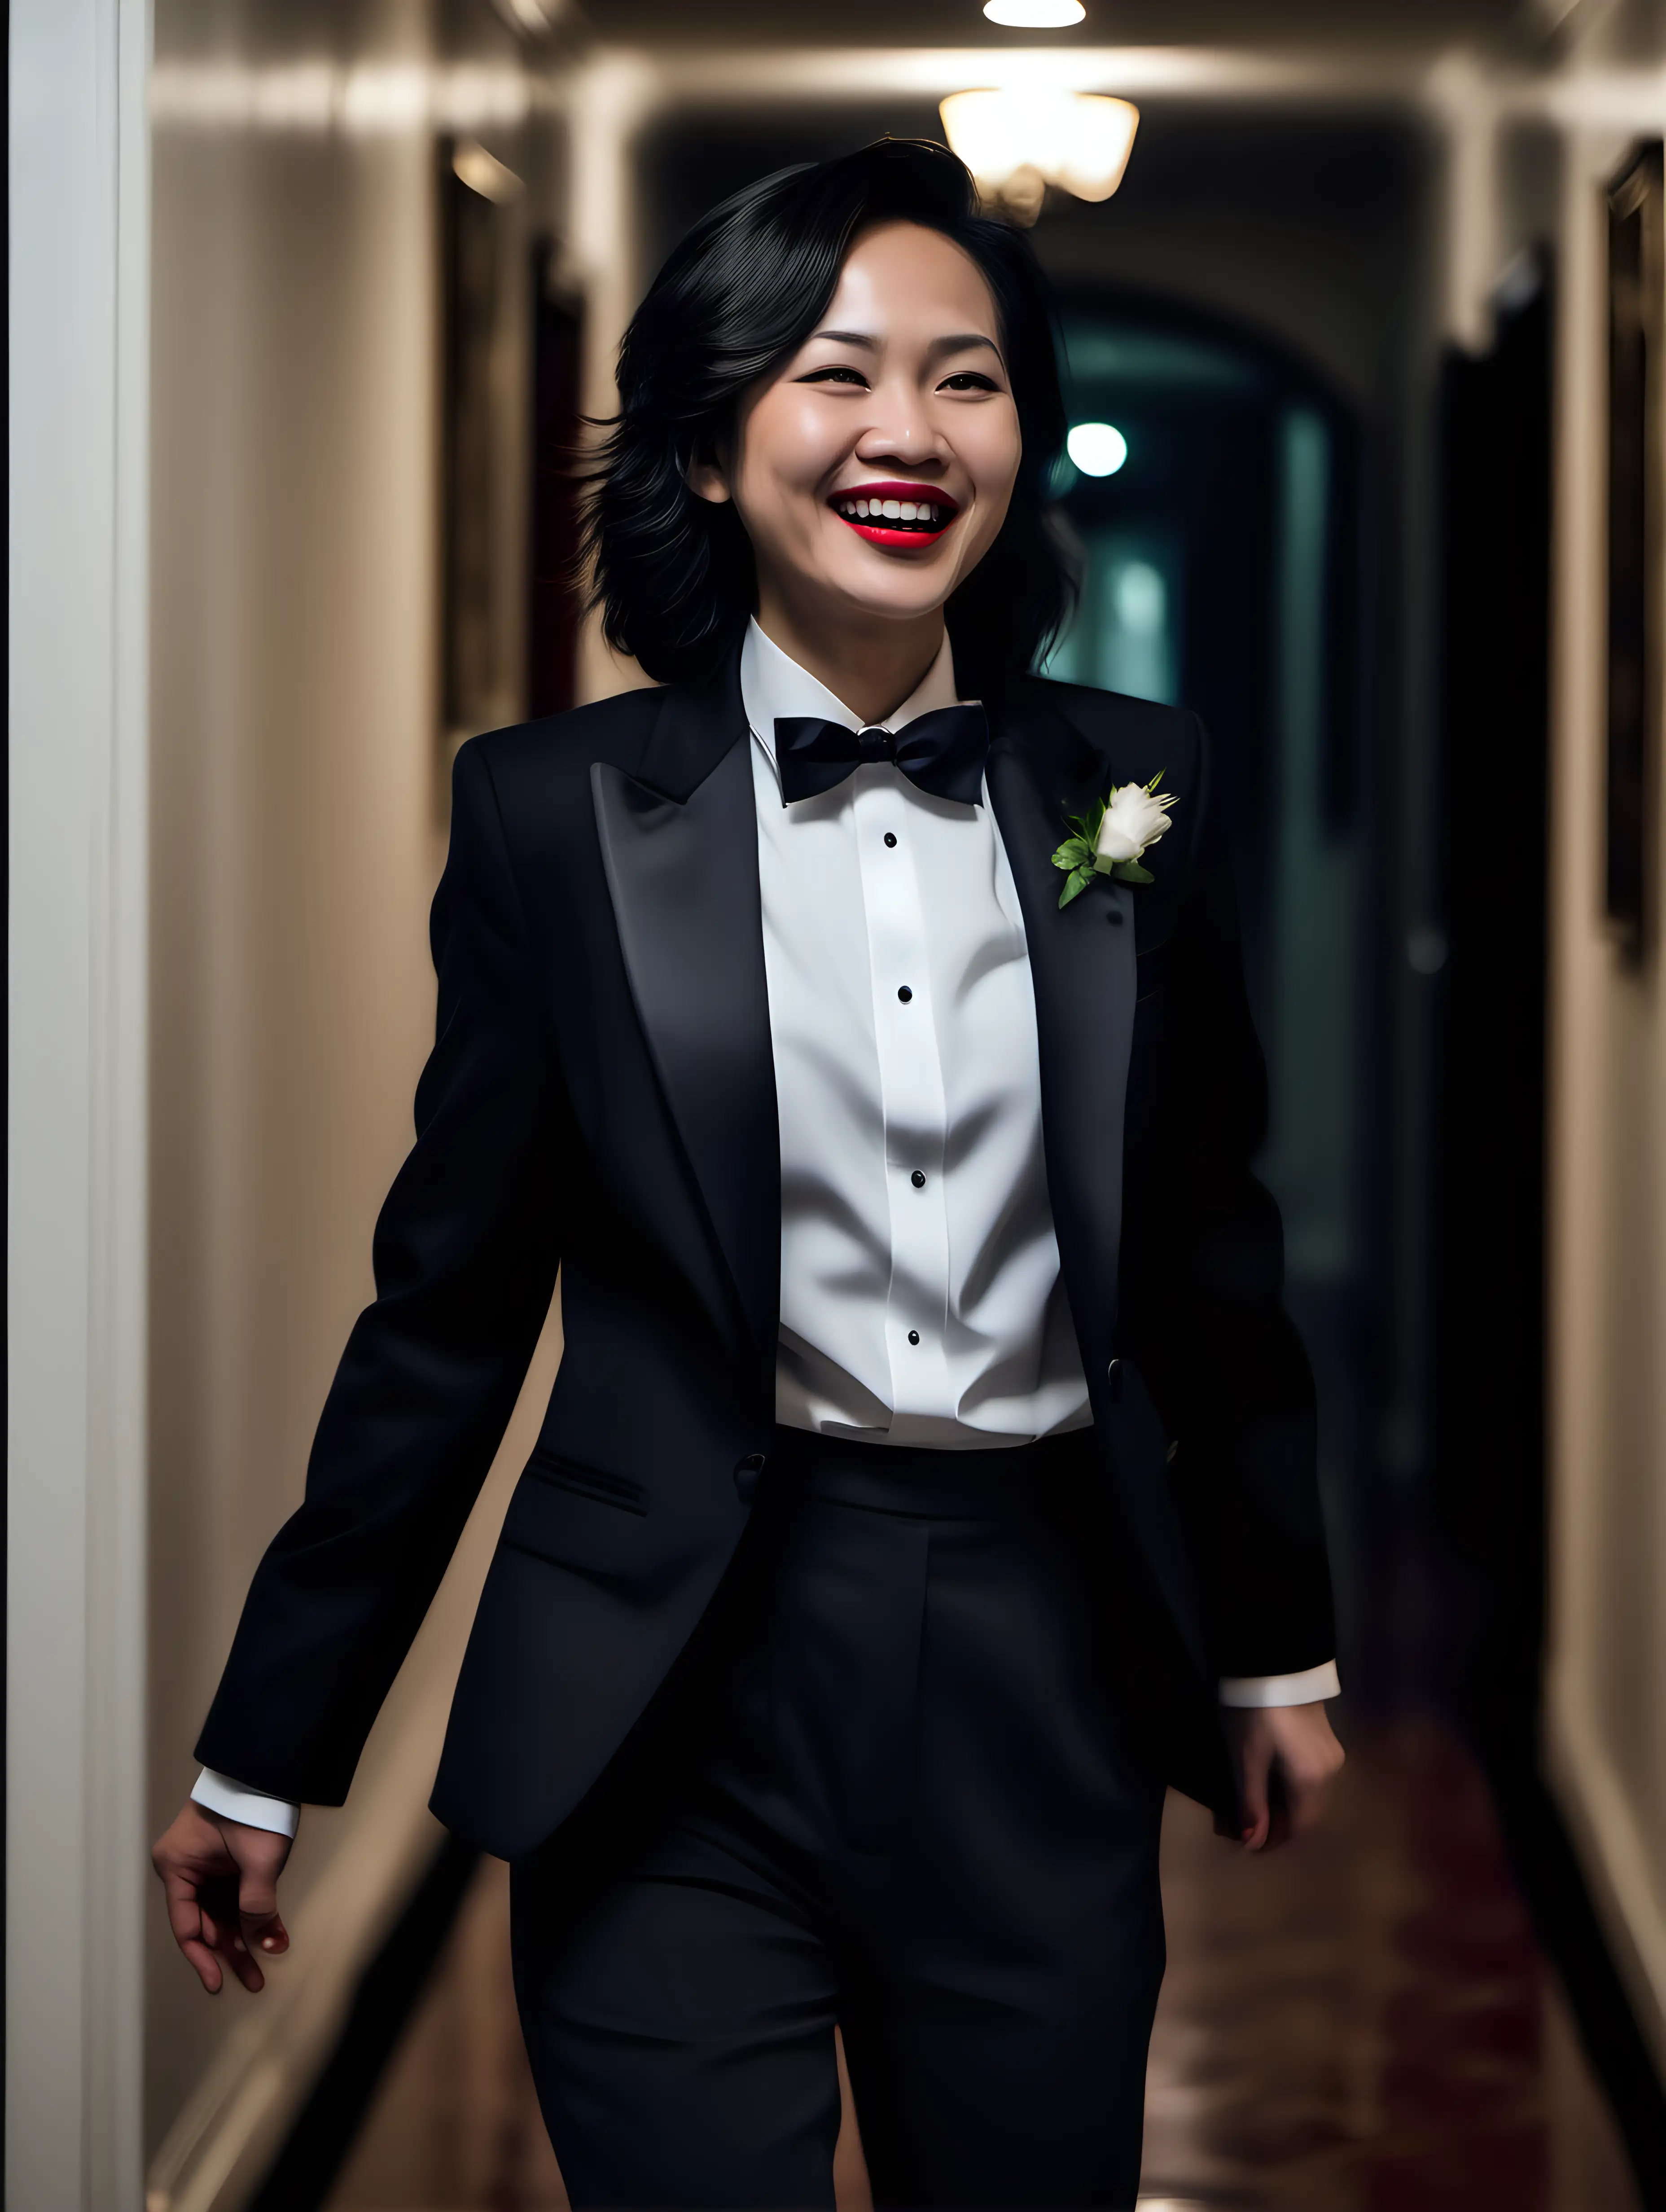 Smiling-Vietnamese-Woman-in-Elegant-Mansion-Hallway-at-Night